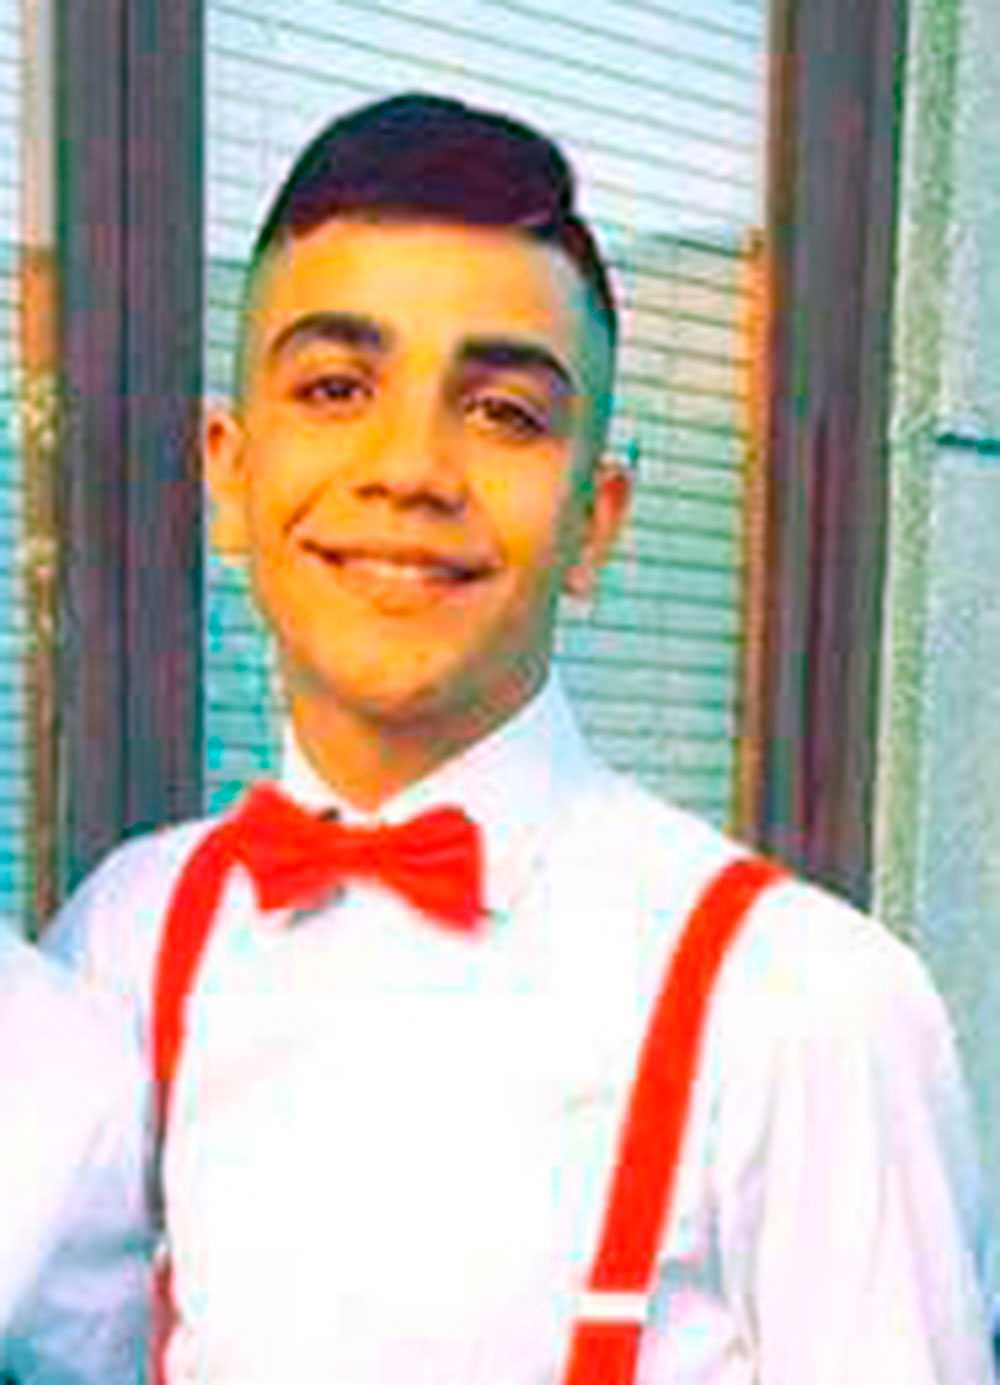 Ahmed, 16 år, sköts ihjäl i Malmö i januari.